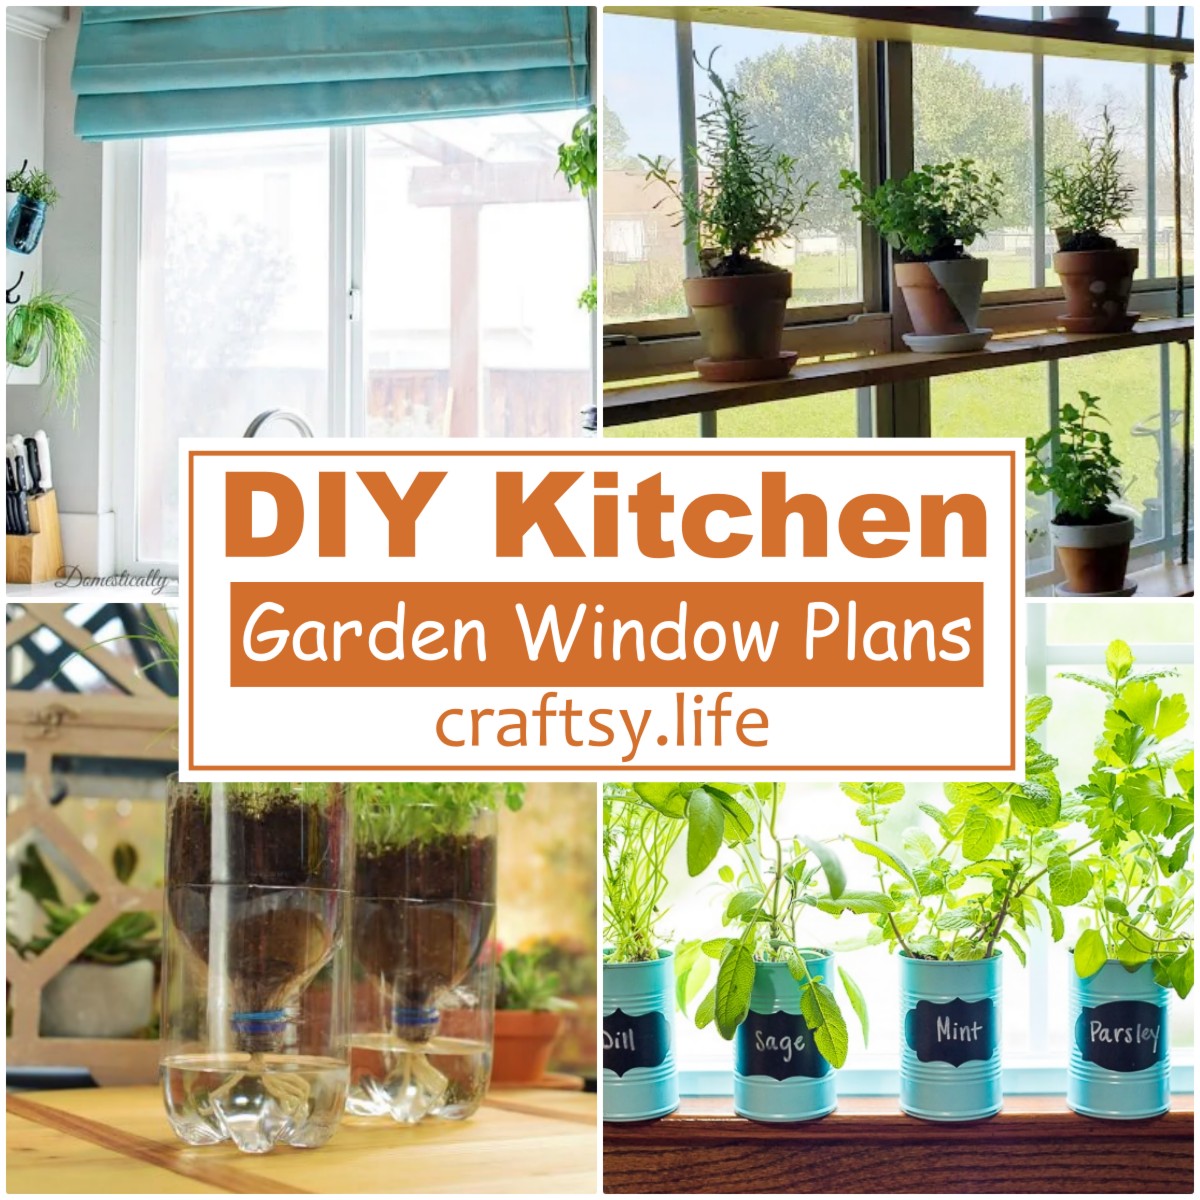 DIY Kitchen Garden Window Plans